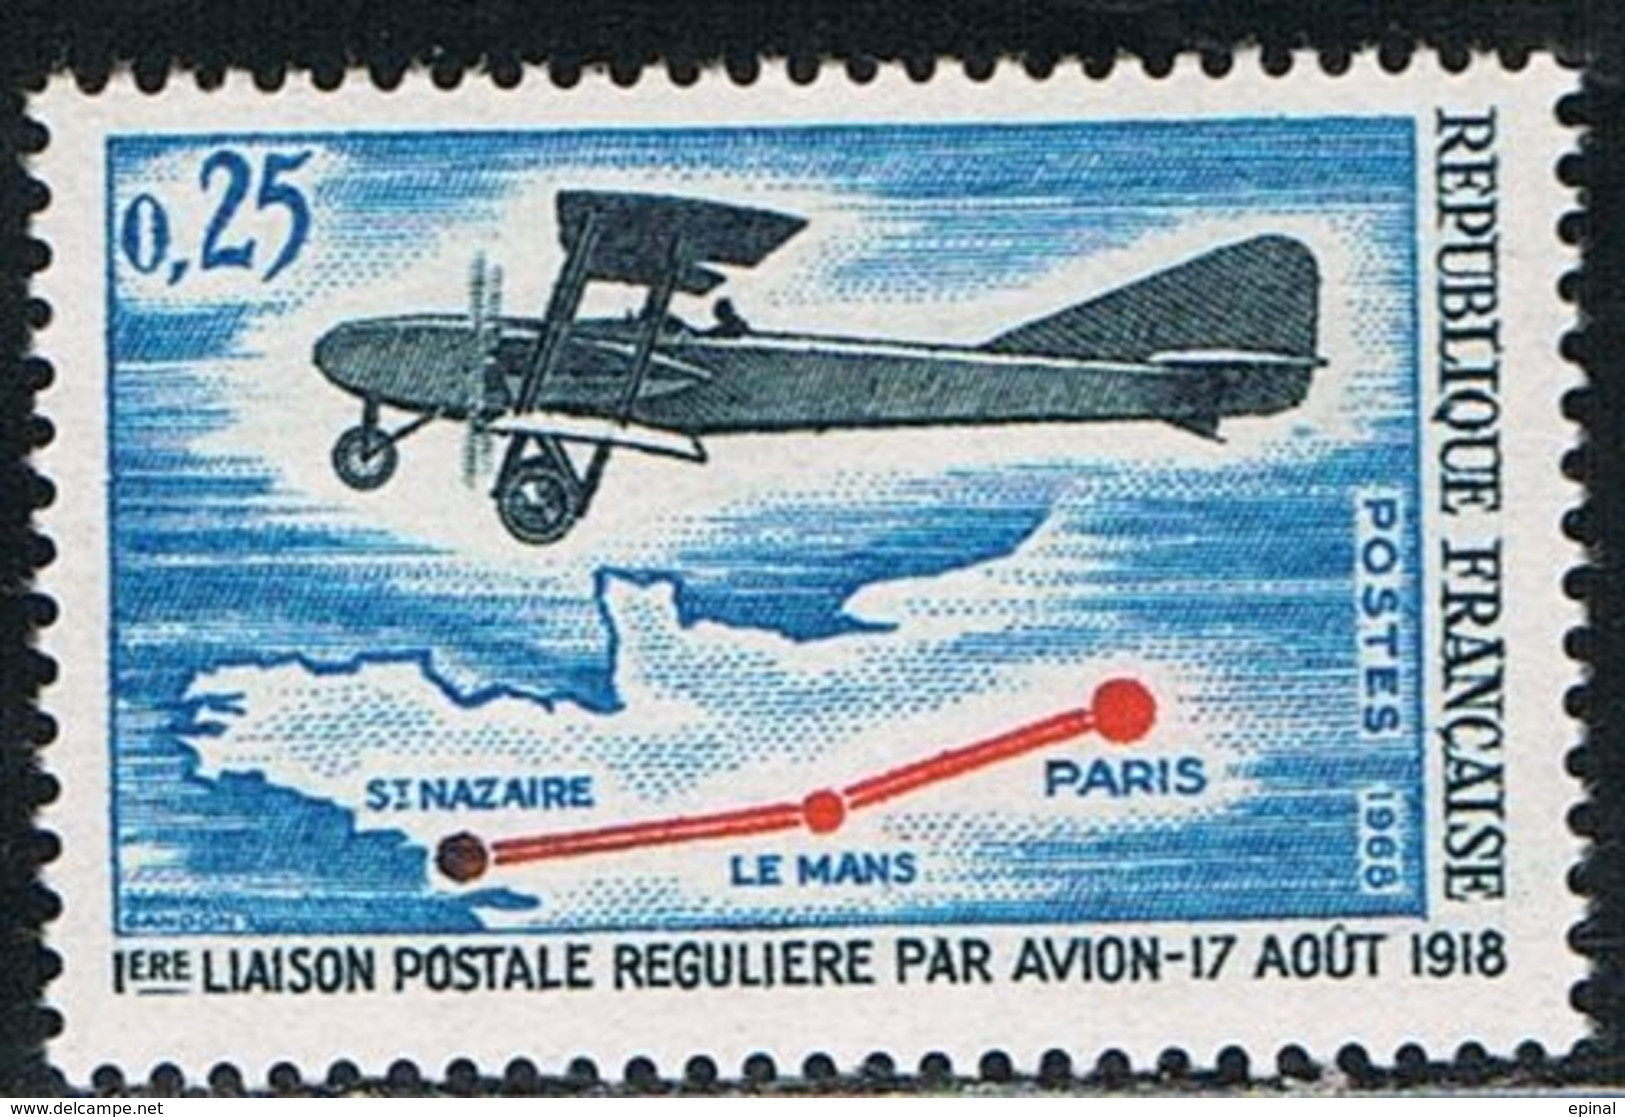 FRANCE : N° 1565 ** (1ère Liaison Postale Régulière Par Avion) - PRIX FIXE - - Nuovi